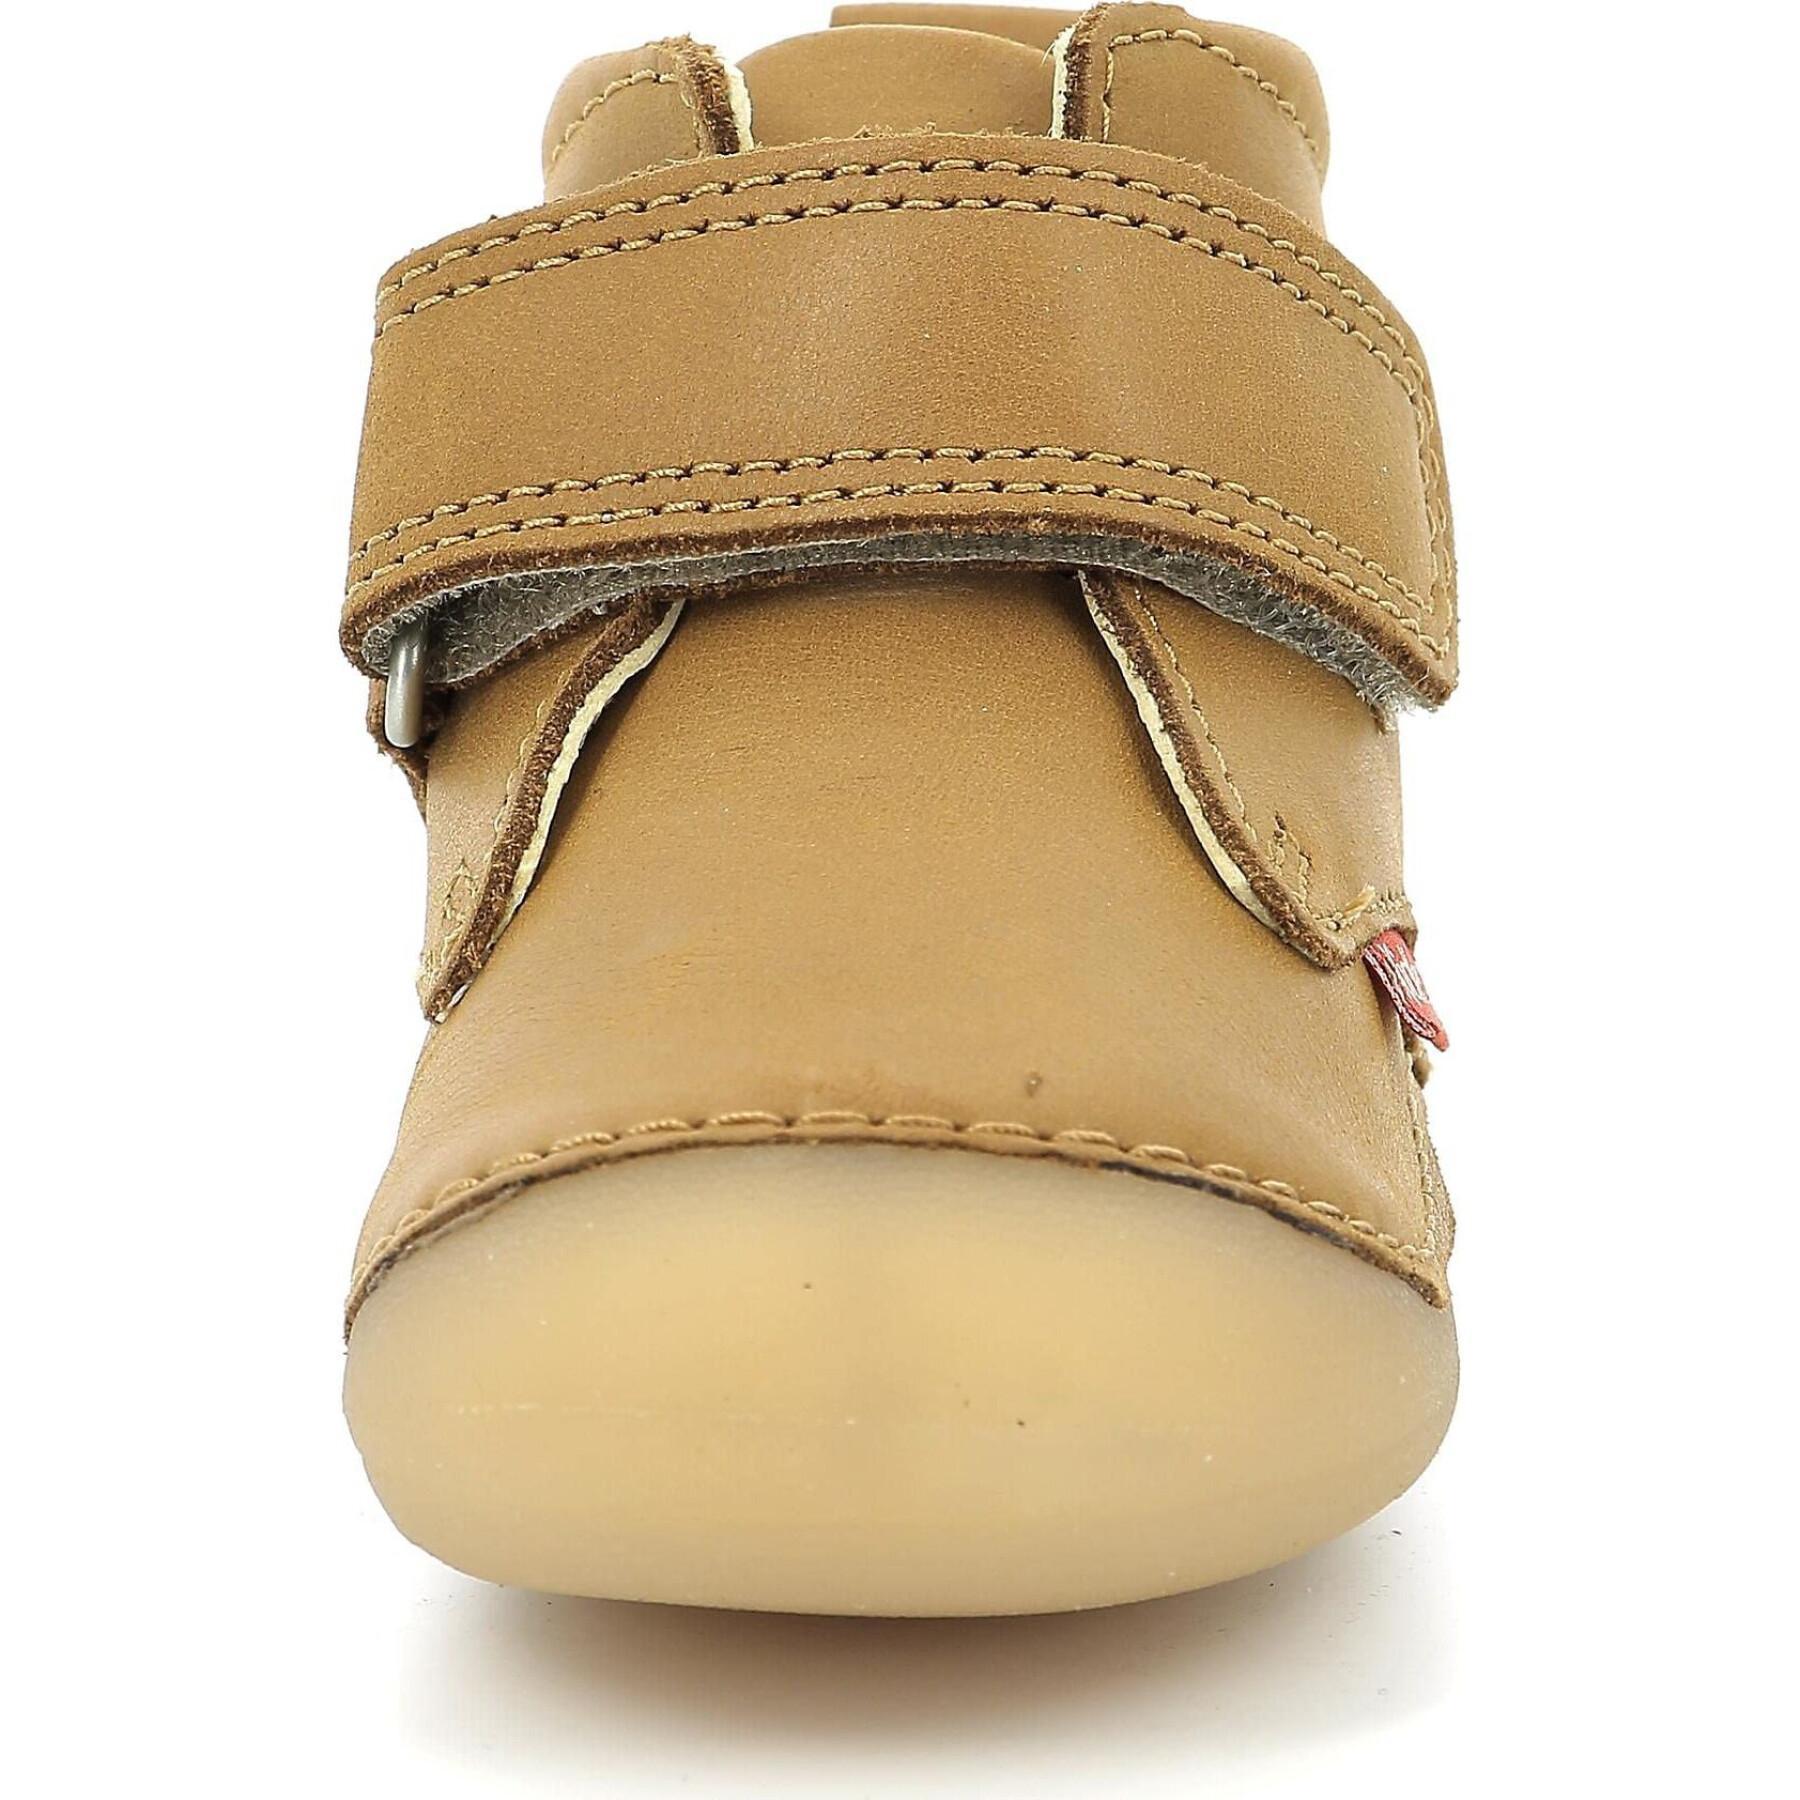 Zapatos de bebé Kickers Sabio